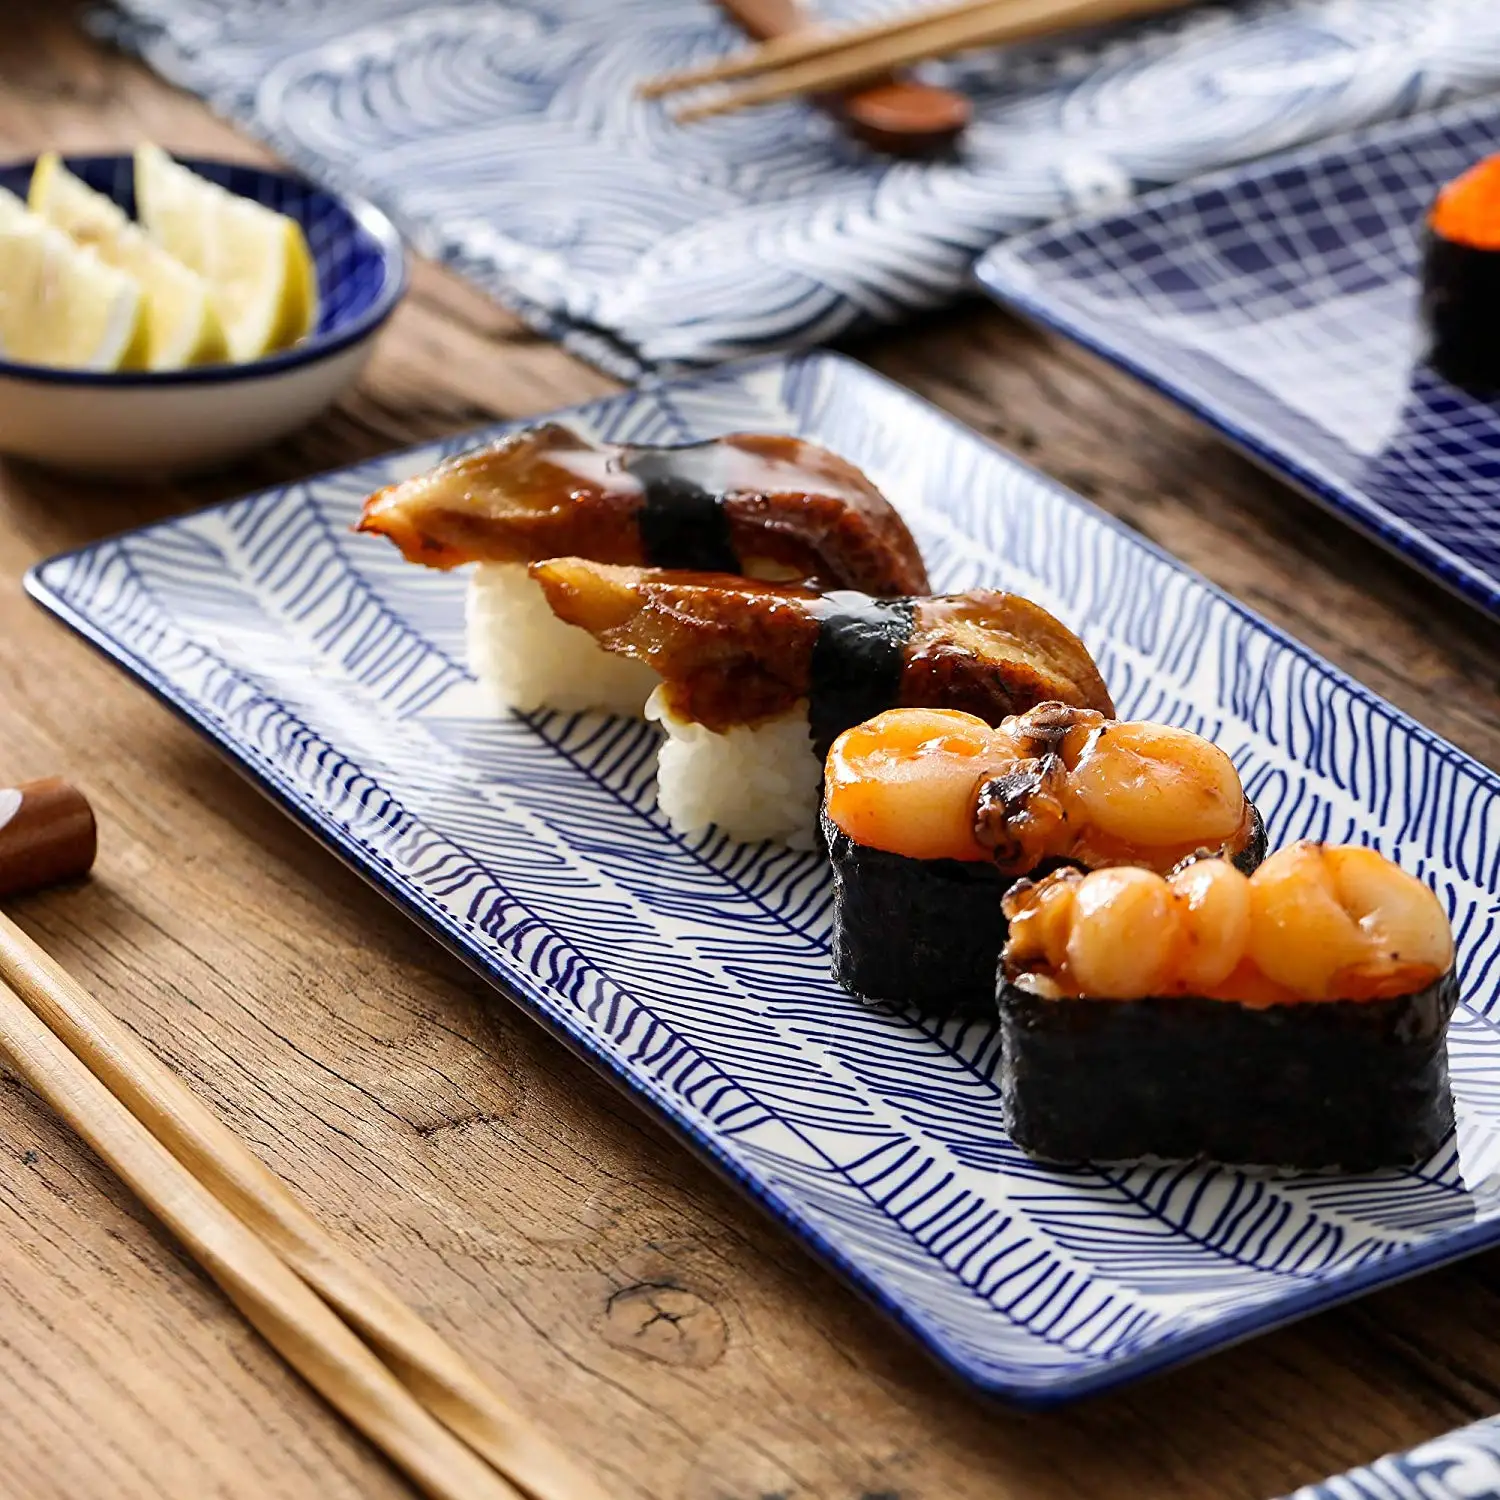 vancasso Serie TAKAKI 2 Ciotoline per Salse 8 pz Piatti da Sushi Giapponese in Porcellana 2 Ciotola di Riso 2 Bastoncini Set di 2 Piastre 